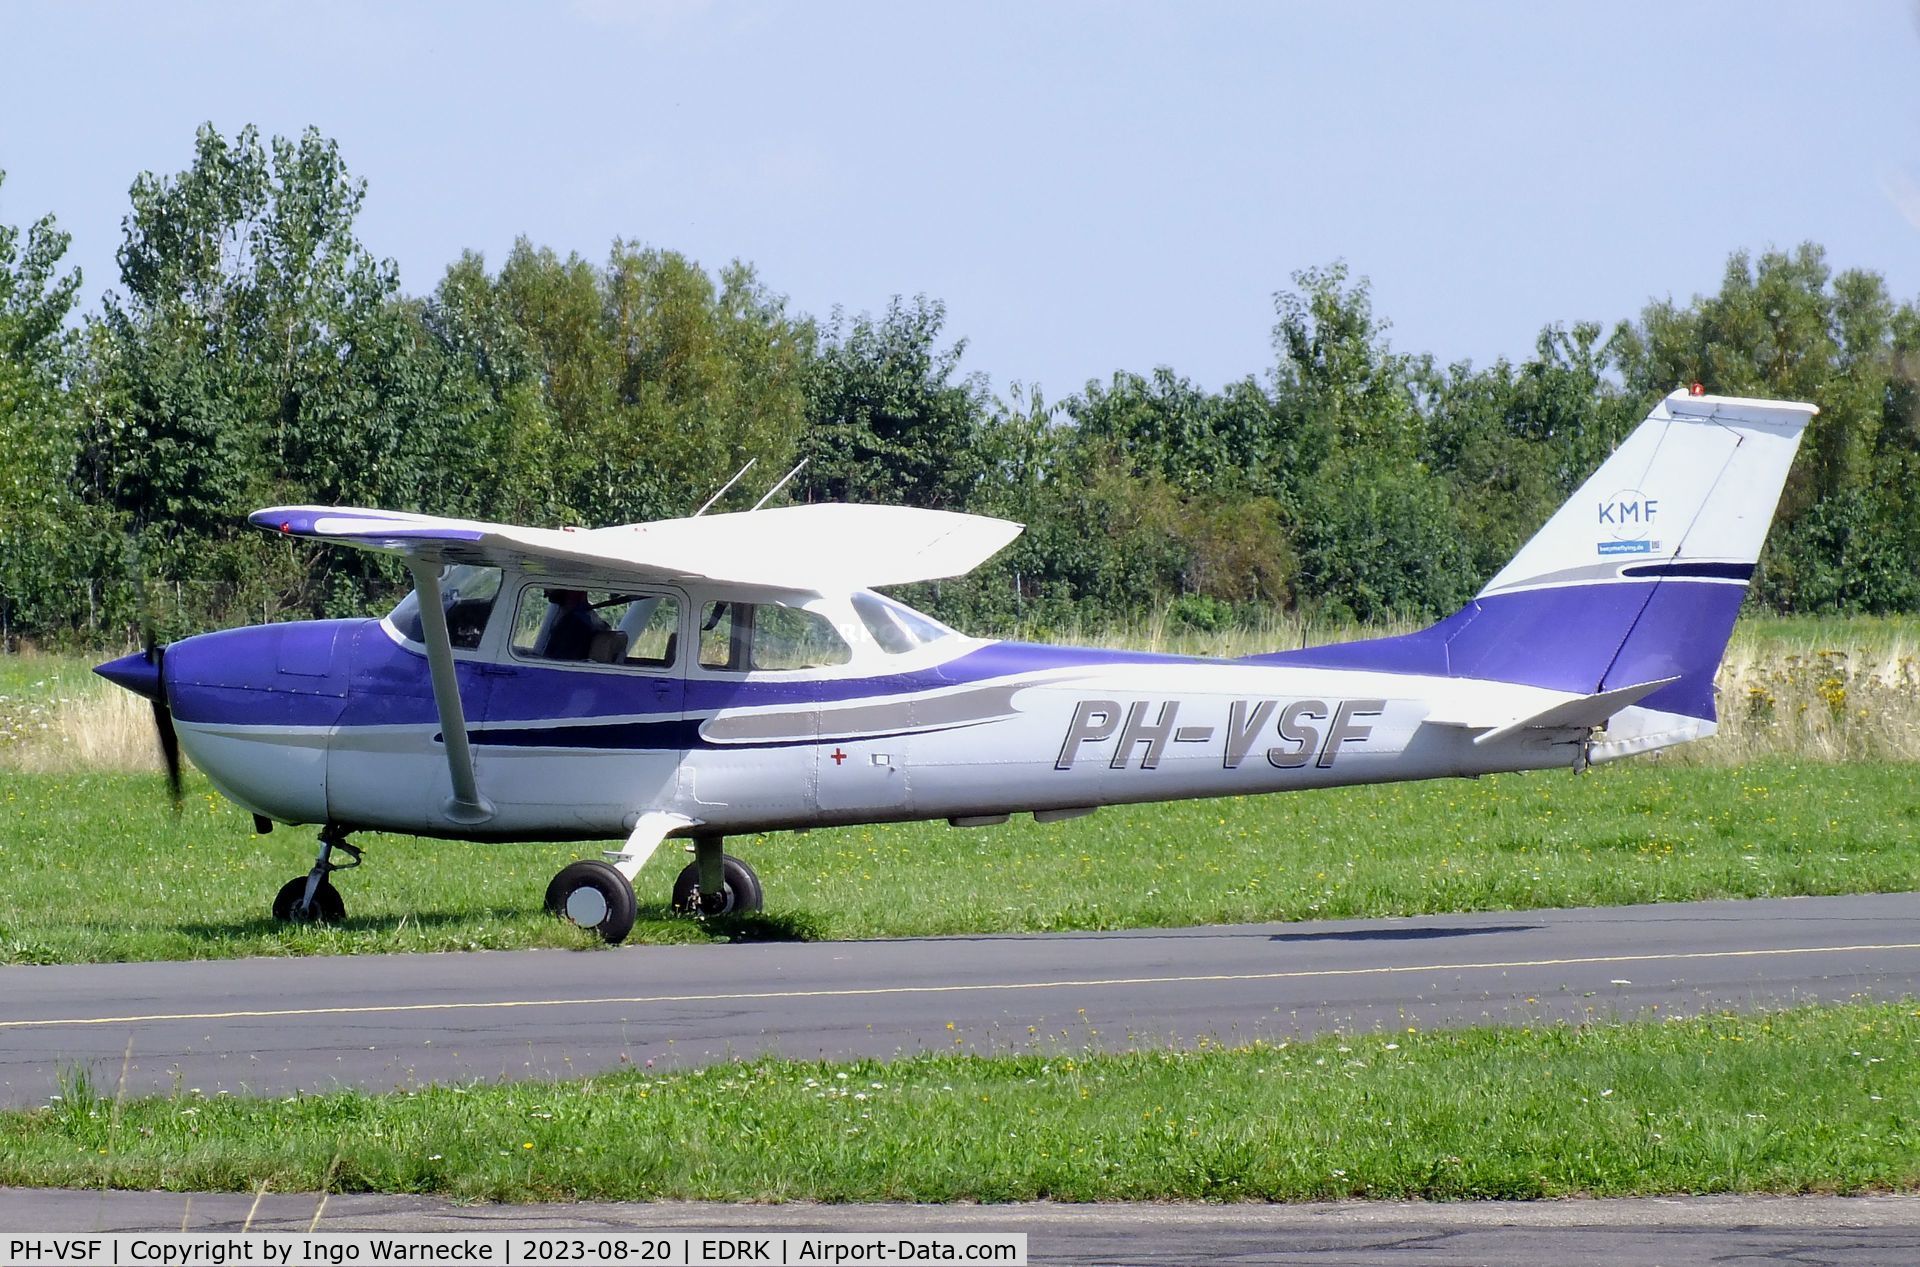 PH-VSF, 1972 Reims F172L Skyhawk C/N 0877, Cessna (Reims) F172L Skyhawk at Koblenz-Winningen airfield